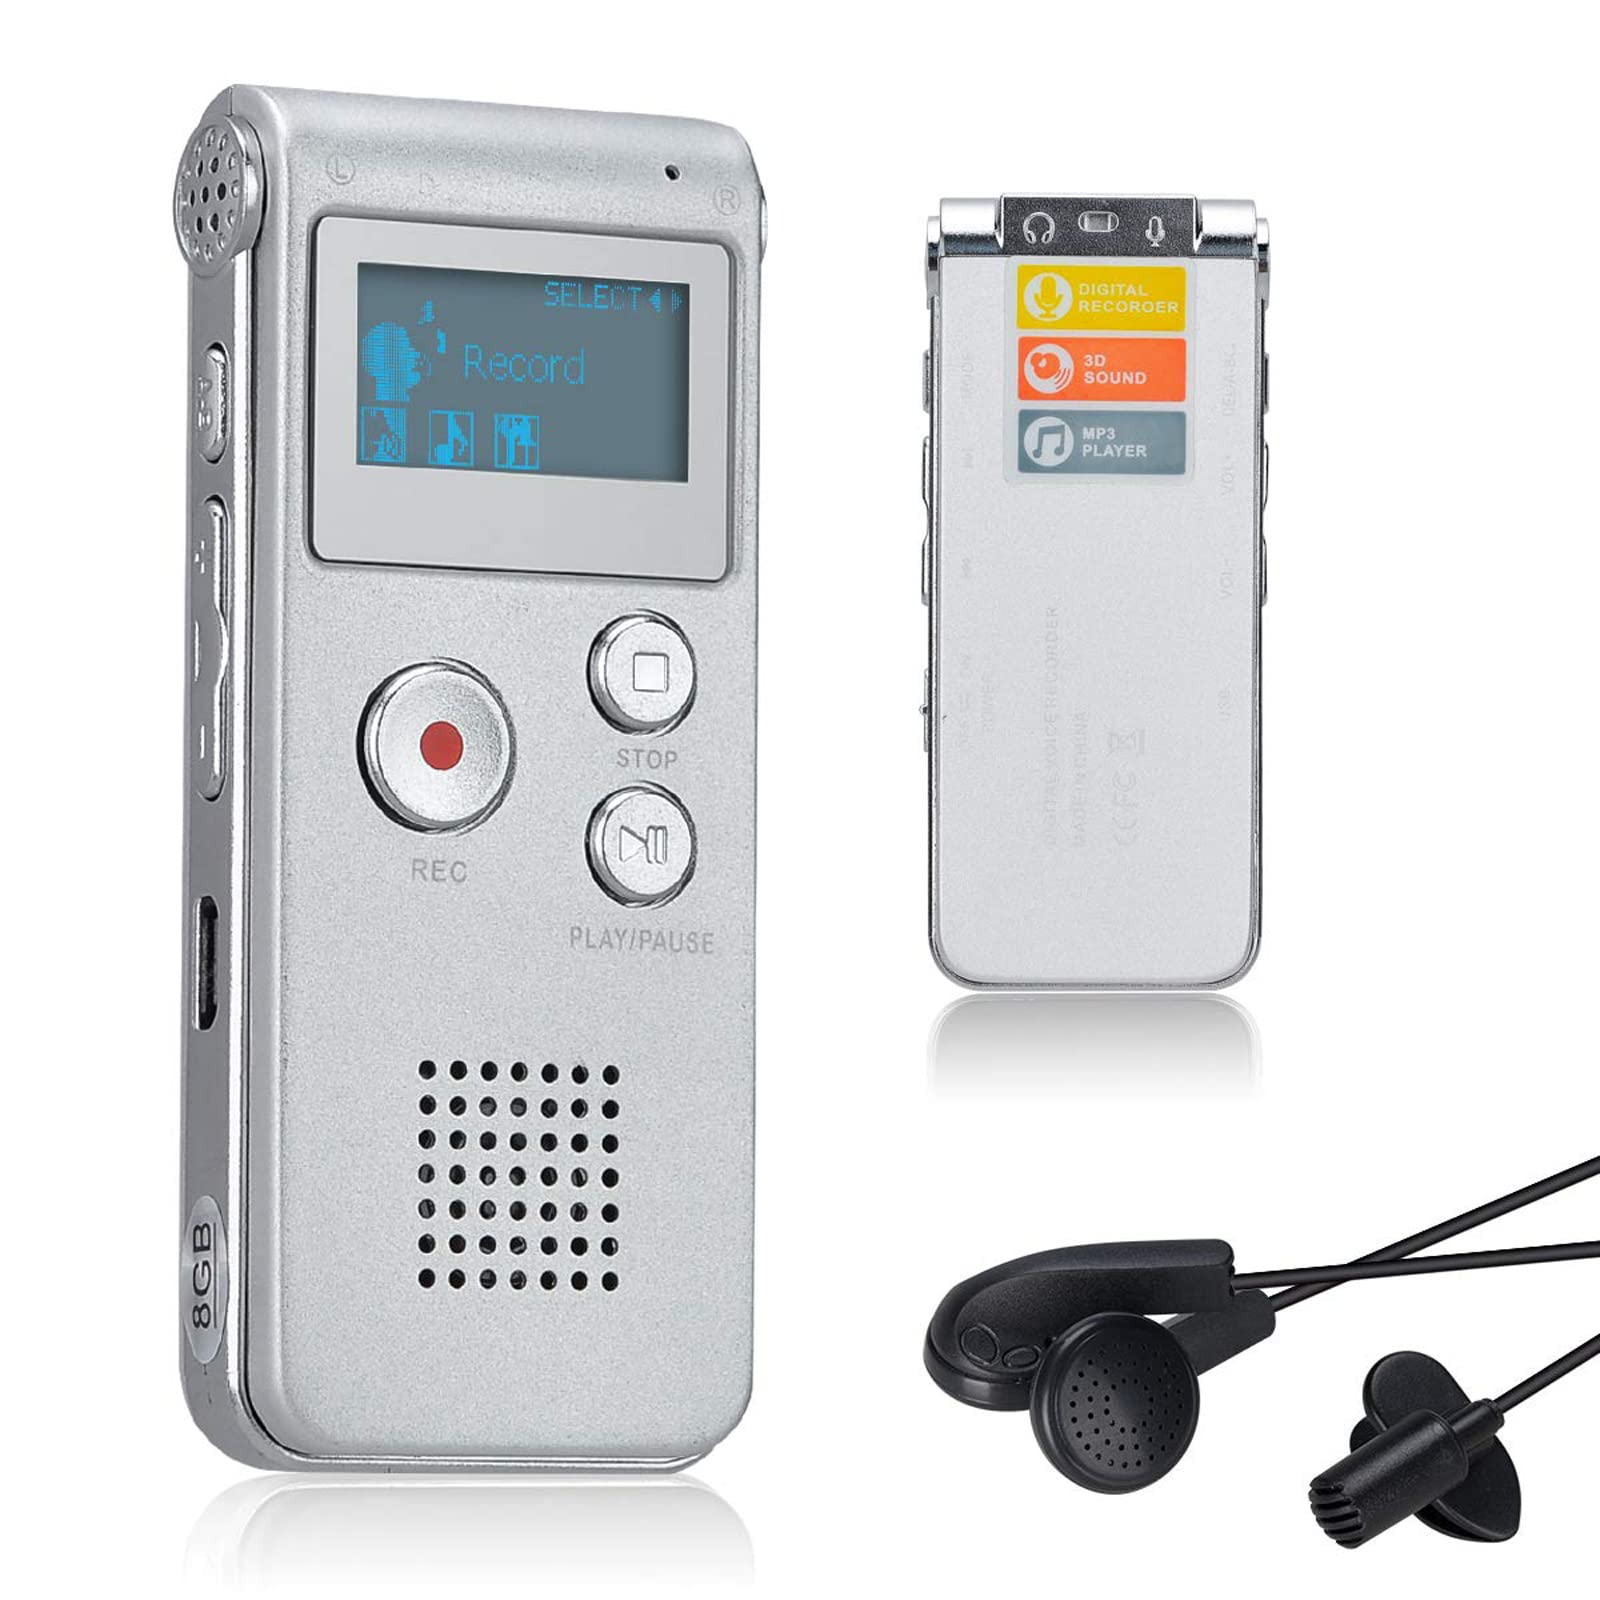 Lychee 8GB LCD Bildschirm Digitales Diktiergerät Aufnahmegerät Sprachaufnahme Audiorekorder Voice Recorder für Studium Konferenzen und Interviews MP3 Player (Silber)